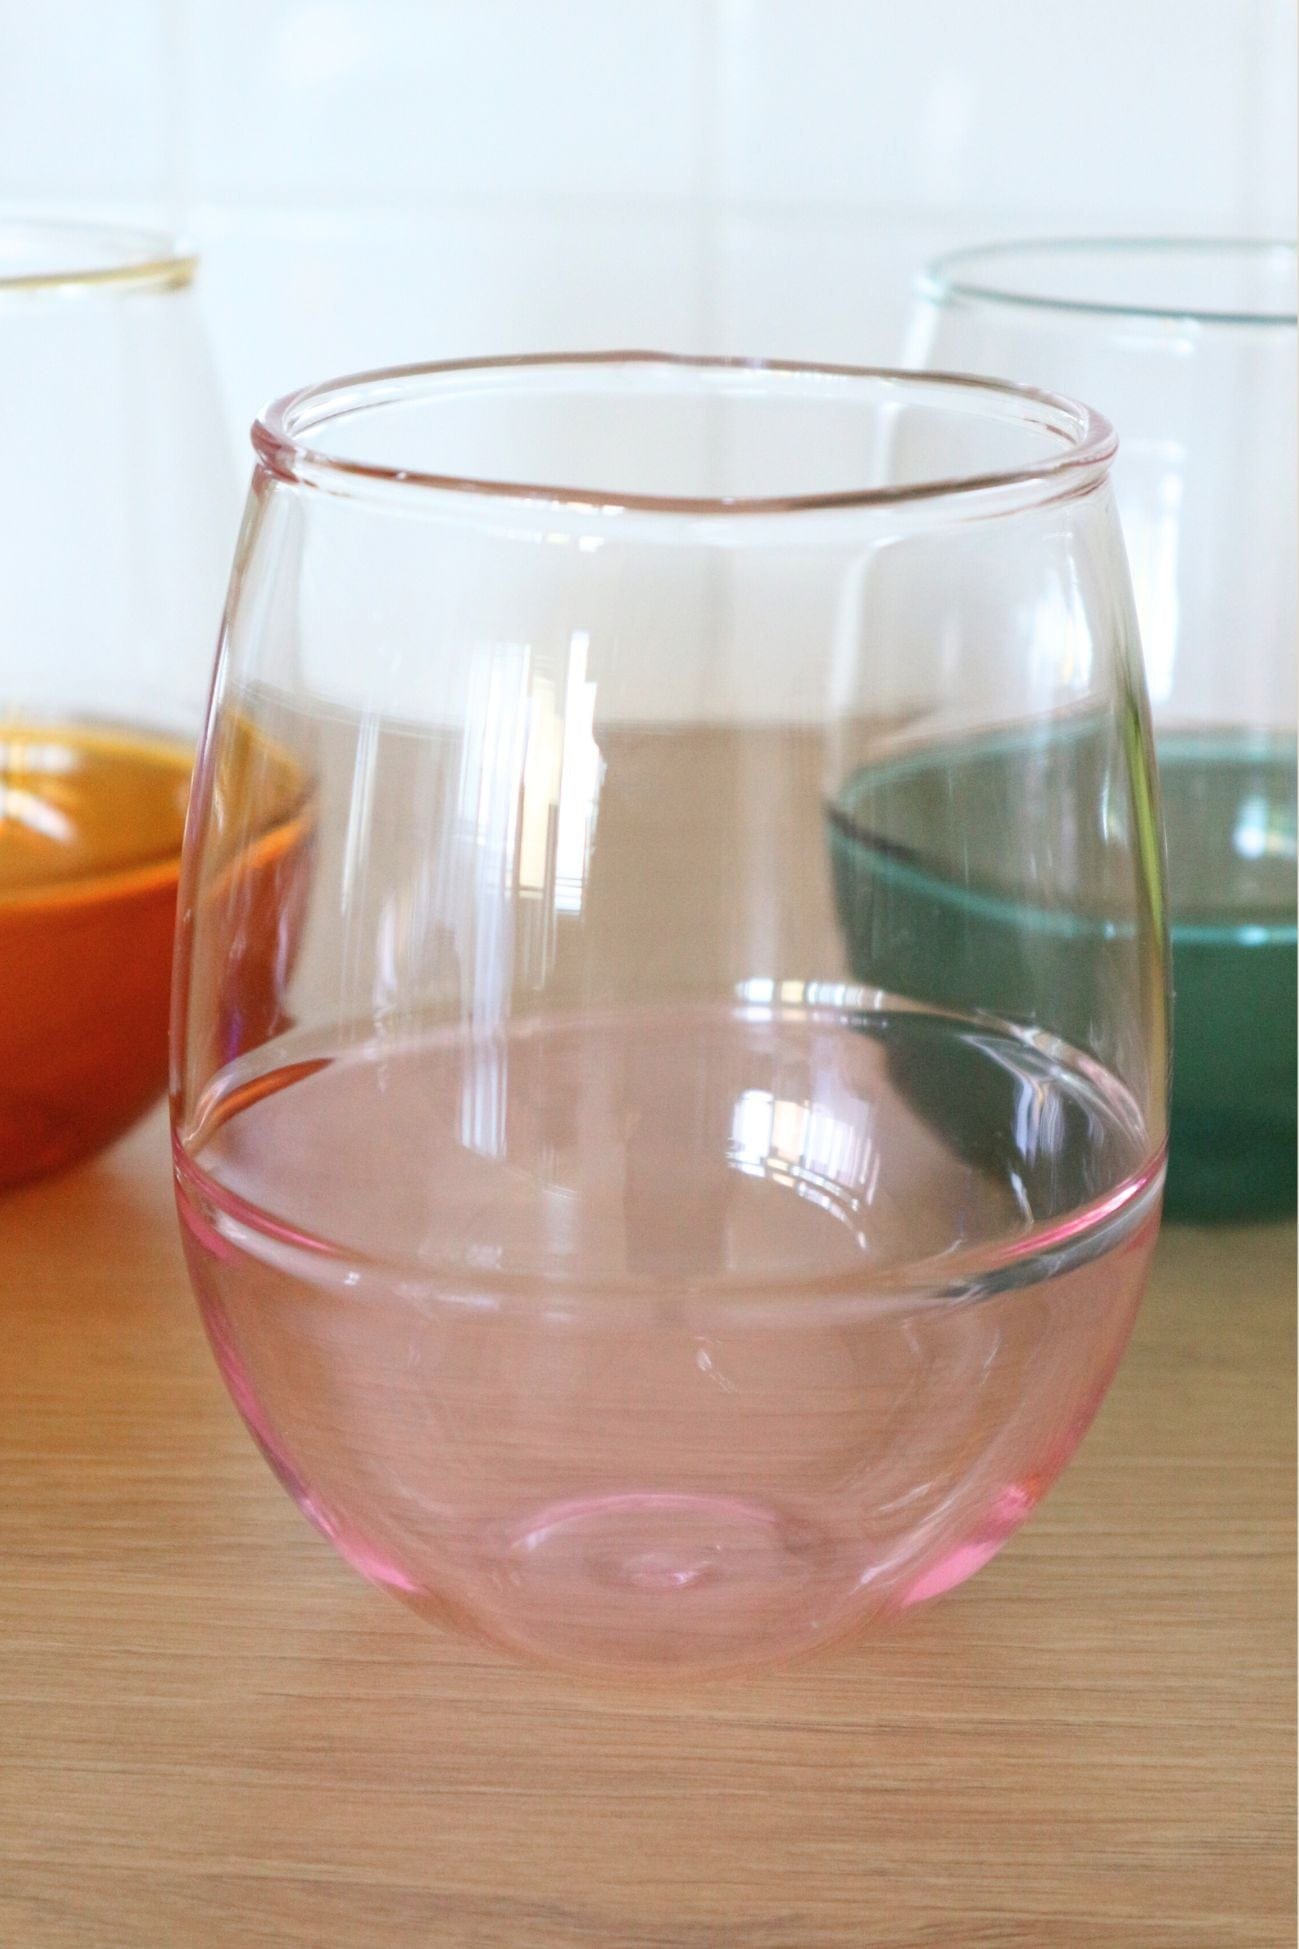 Item International Pop Pop - Set di 4 bicchieri colorati in vetro borosilicato | Item International